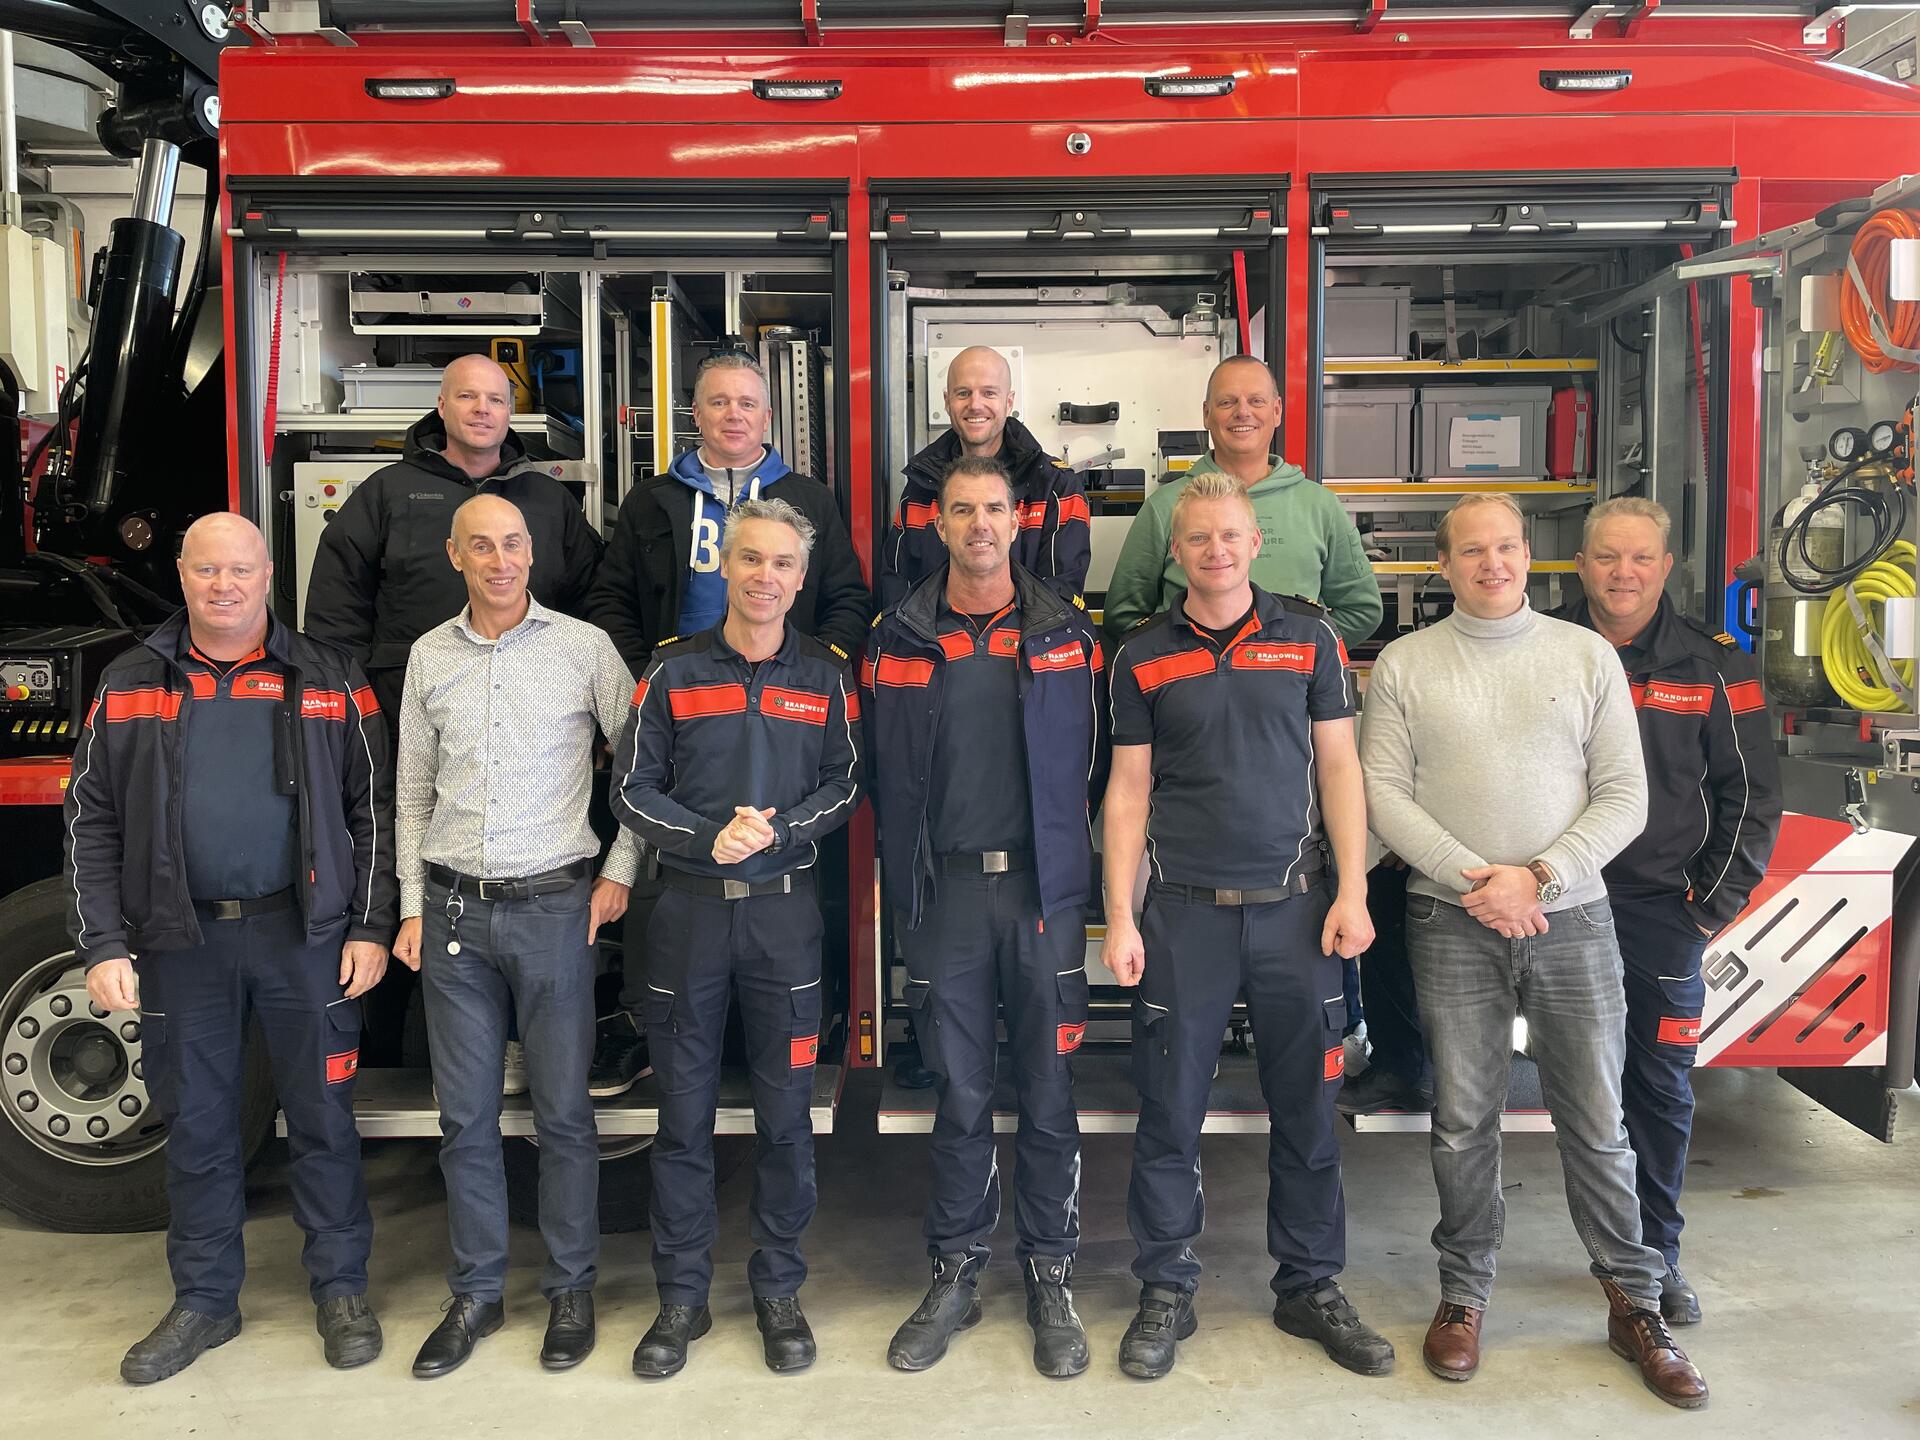 De werkgroep met 11 brandweermannen poseren voor het hulpverleningsvoertuig